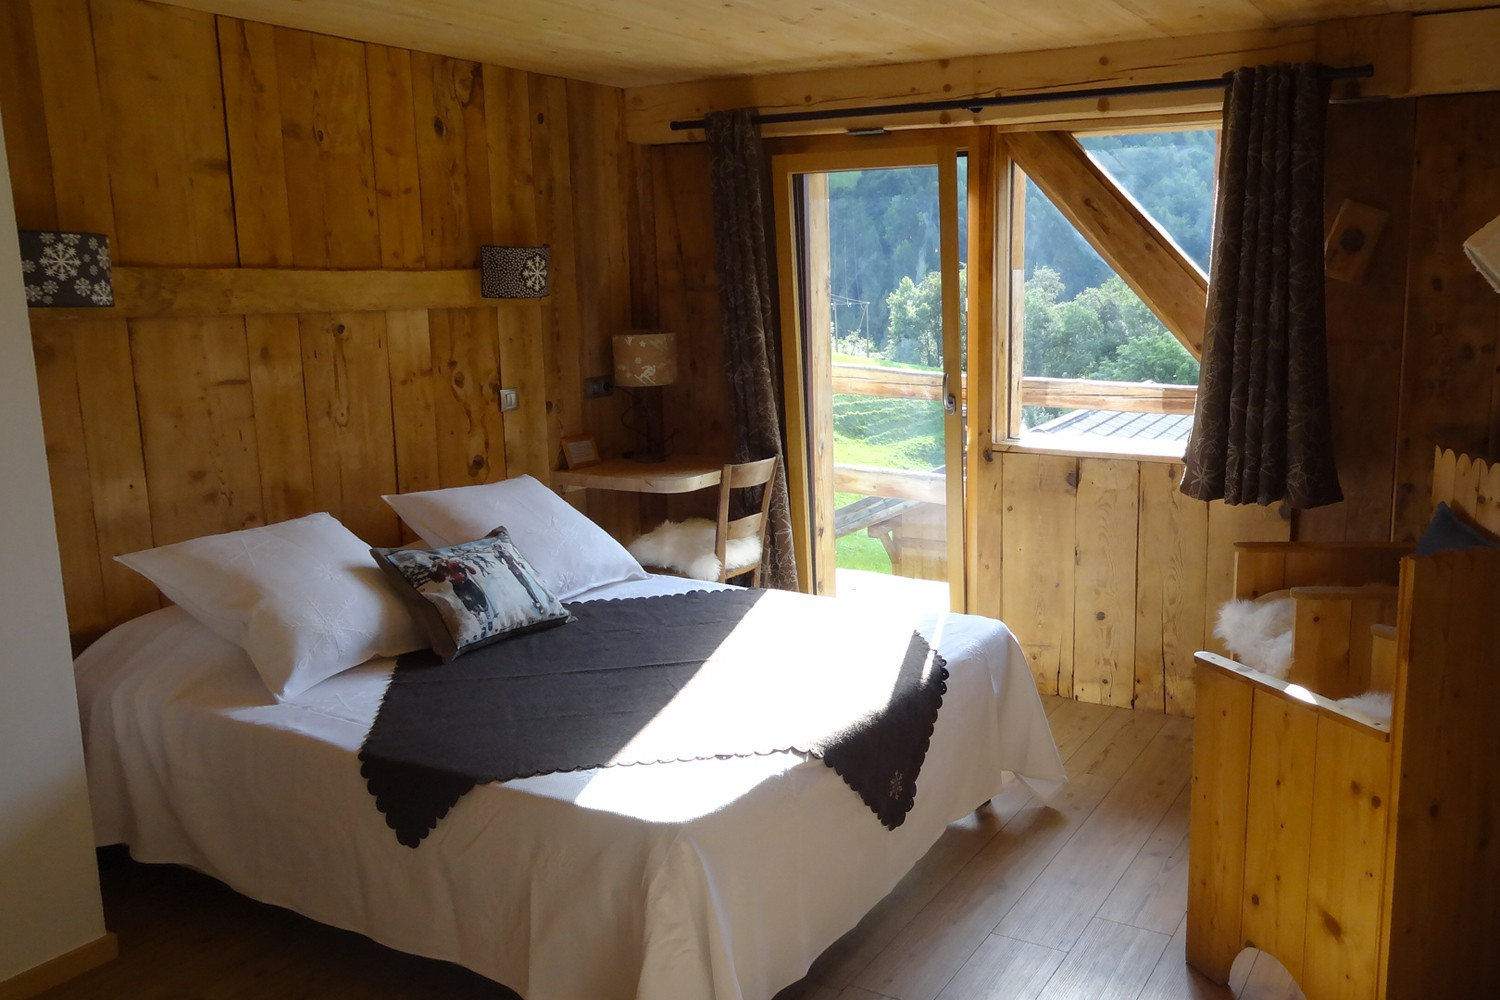 Location Chambres D'hôtes Vacances Ski concernant Chambre D Hote Beaufort